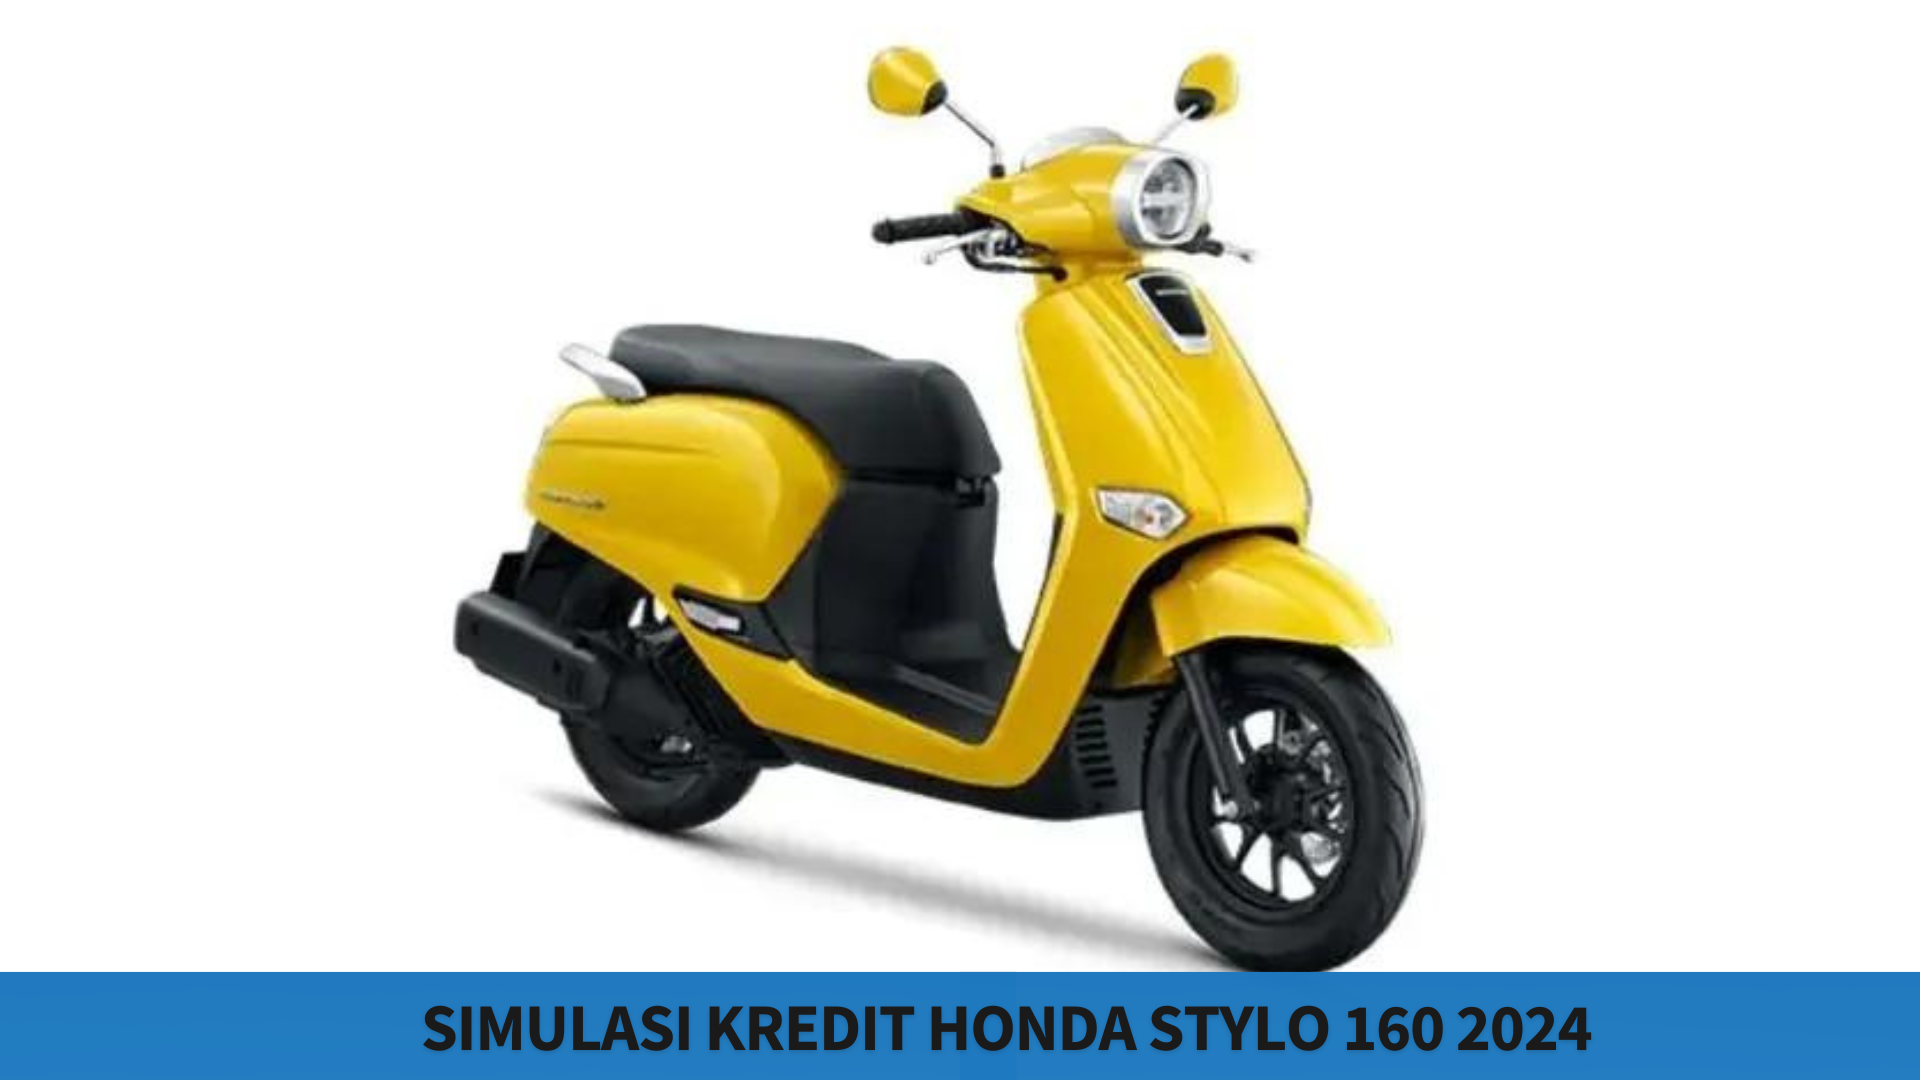 Simulasi Kredit Terbaik Honda Stylo 160 2024, Cukup 1 Jutaan Saja Bisa Bawa Pulang Motornya